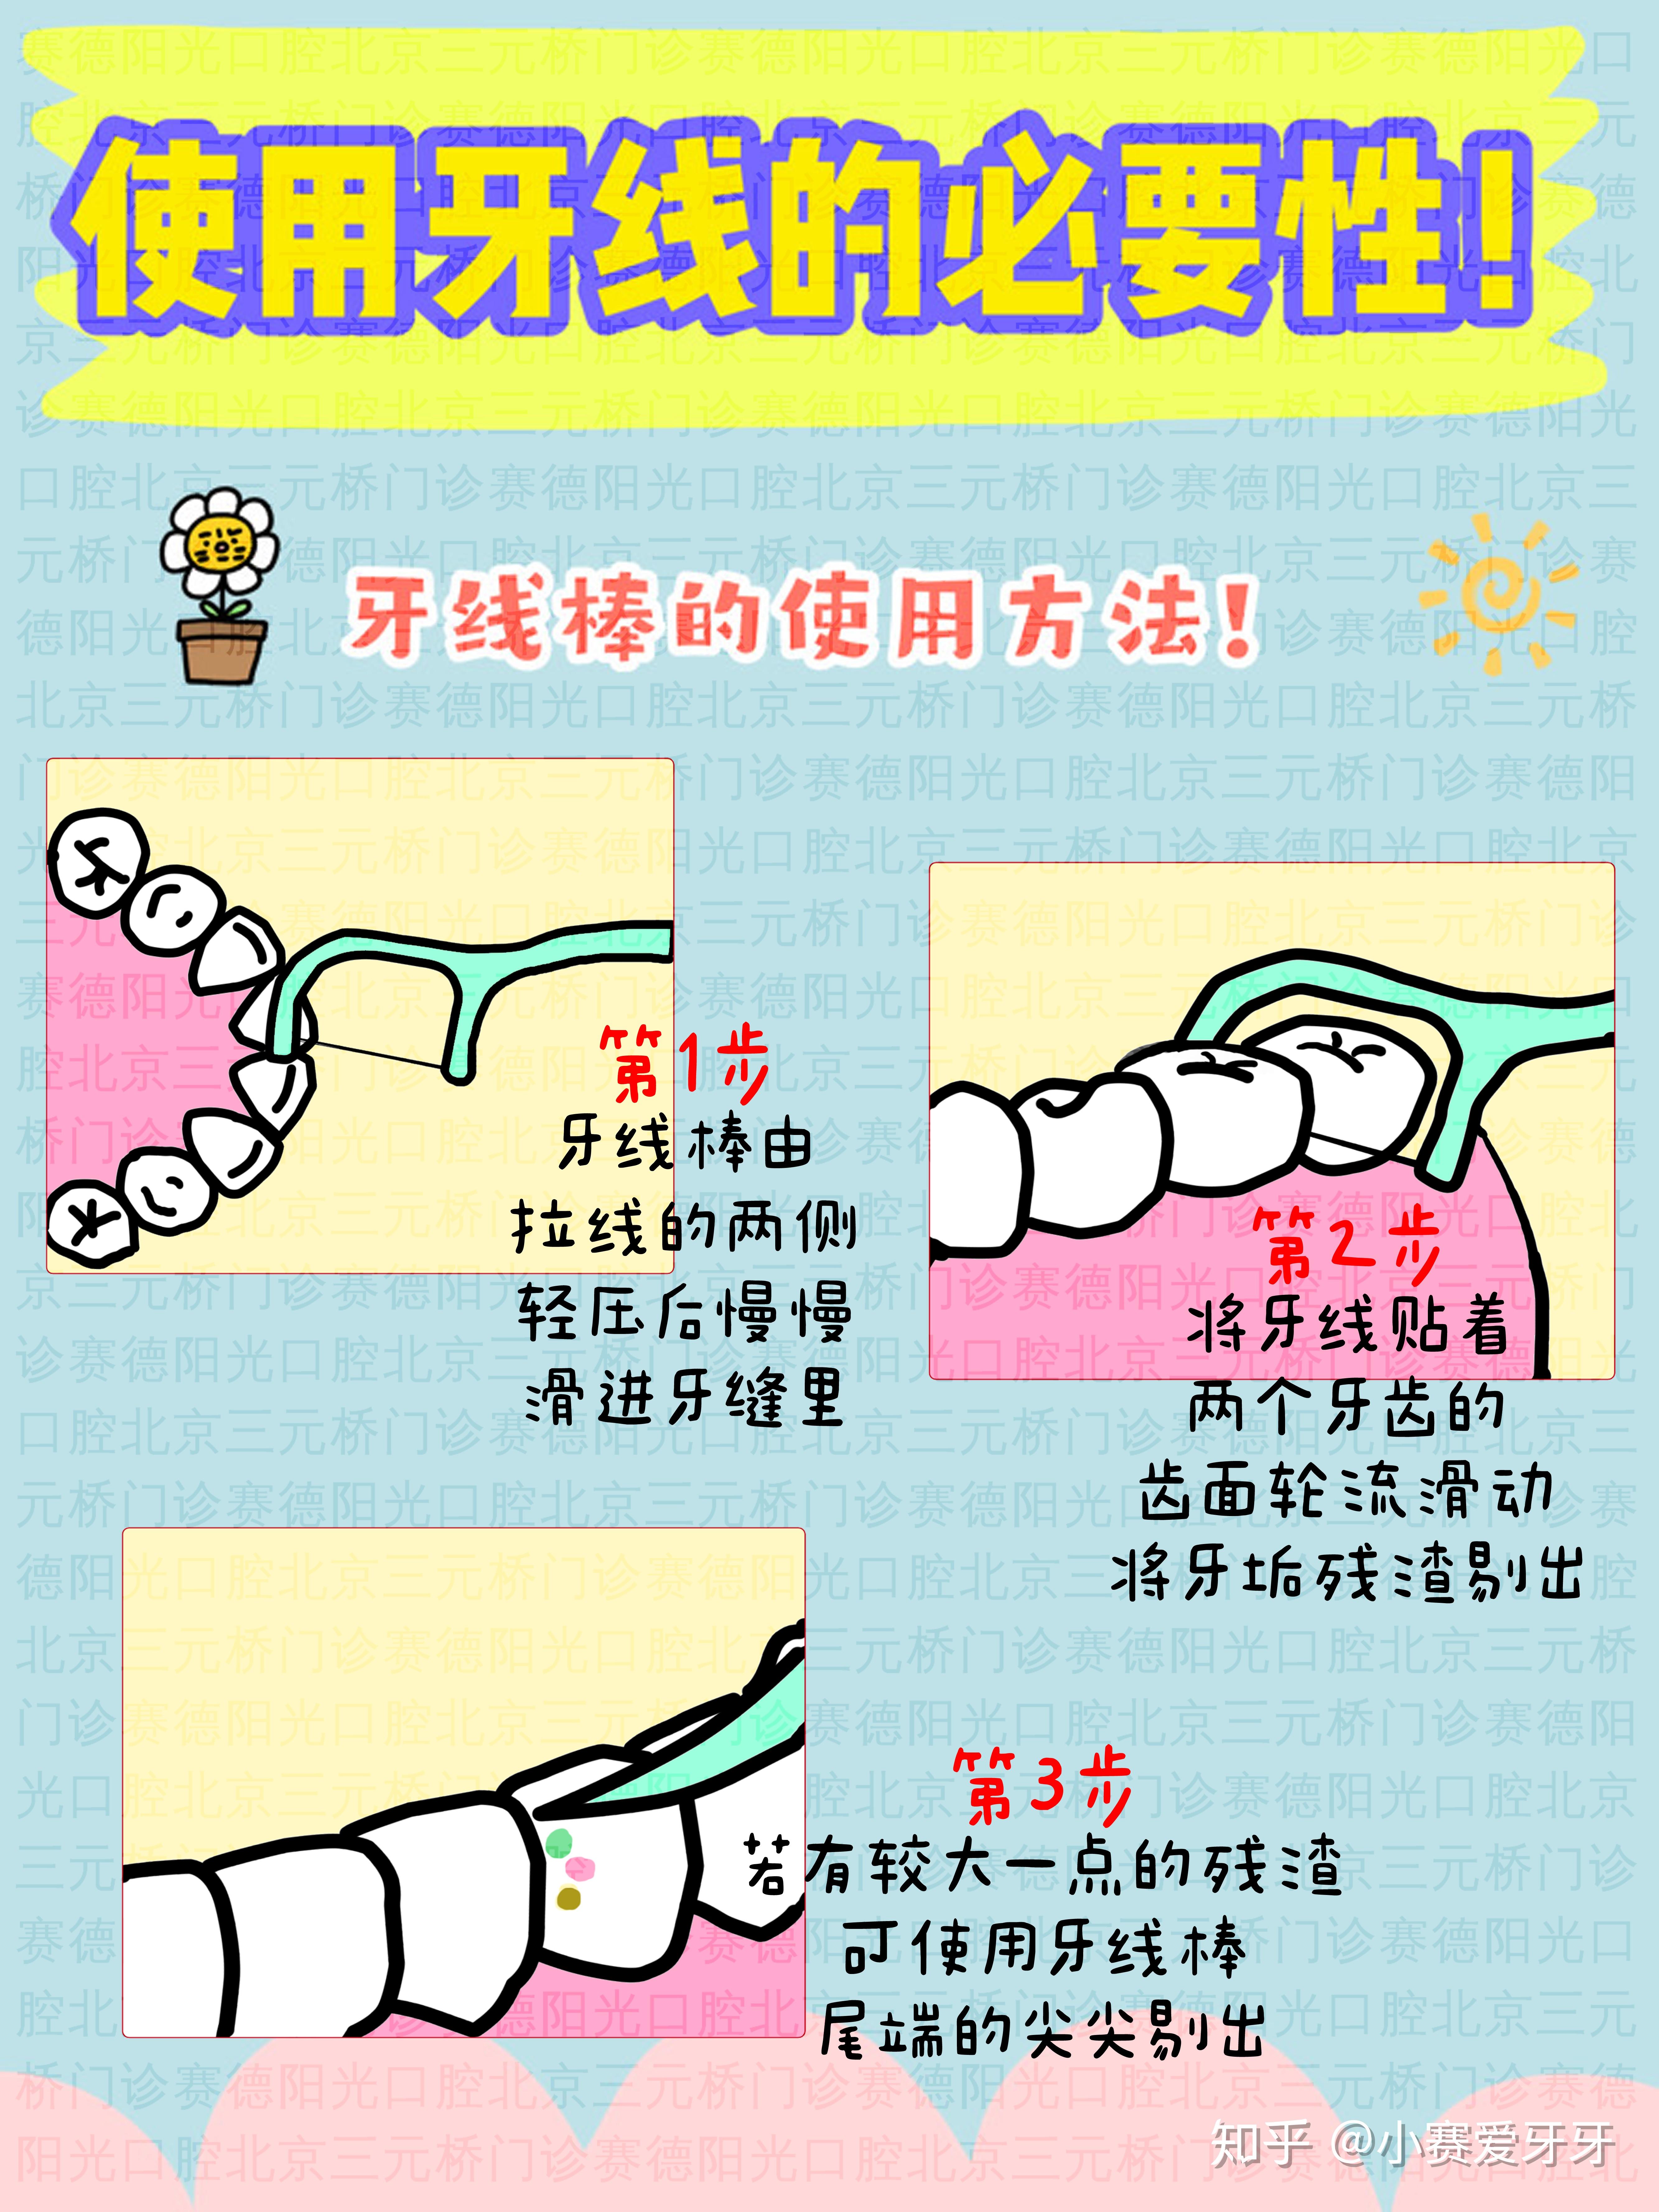 使用牙线的必要性图解如何正确使用牙线棒